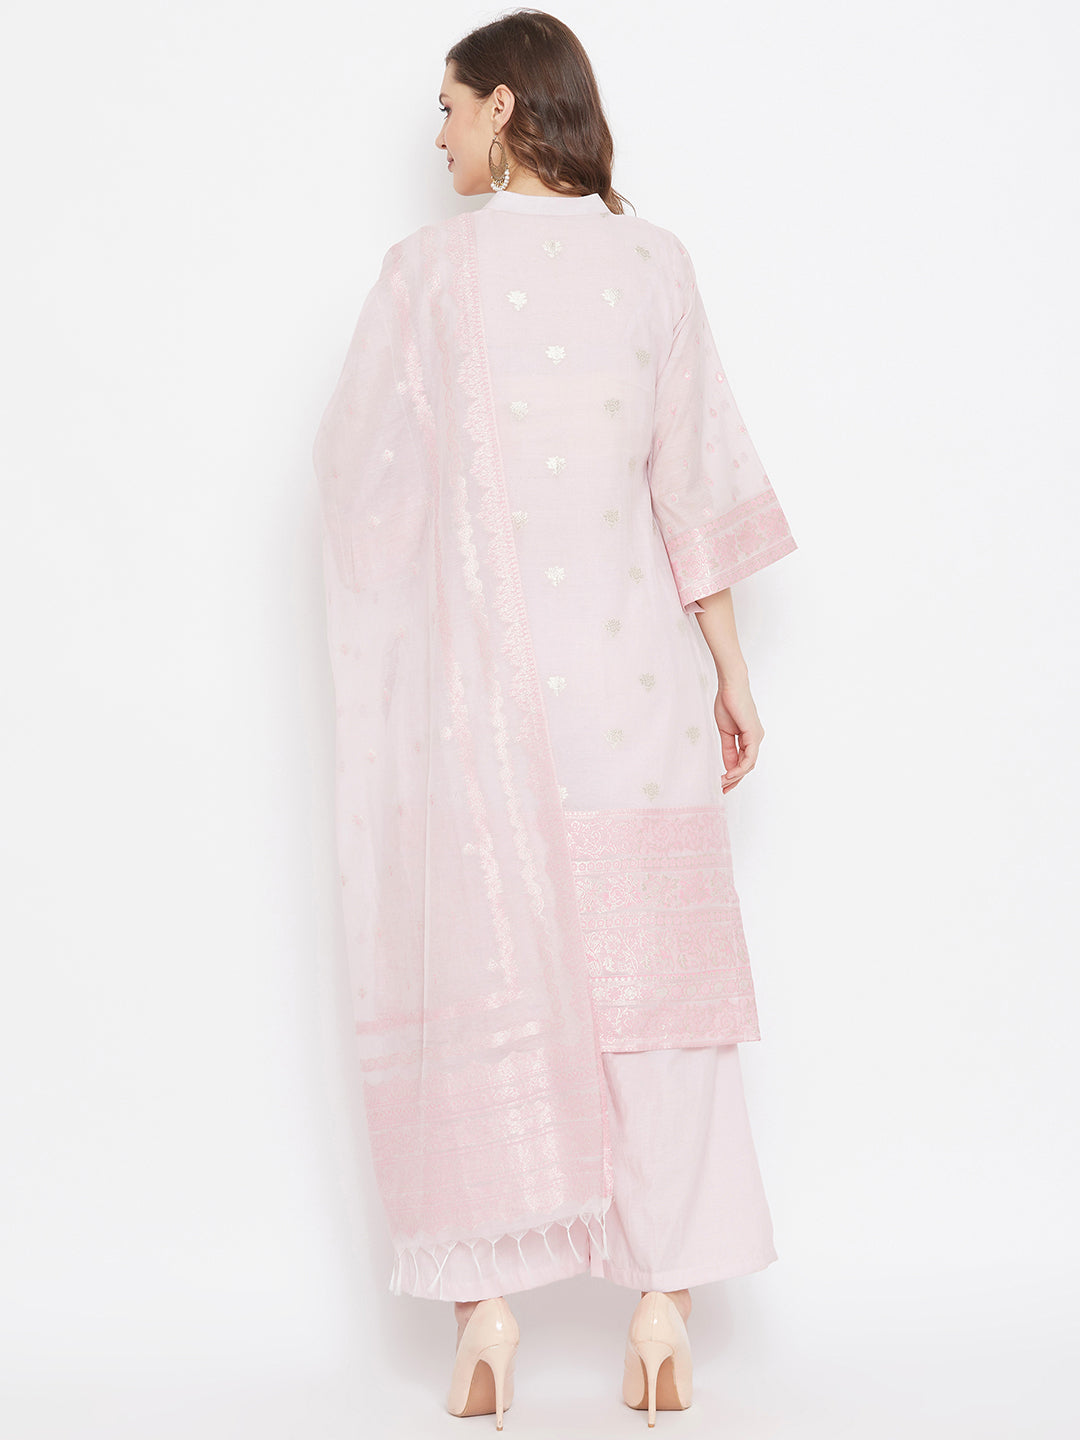 Cotton Silk Zari Woven Pink Dress Material with Dupatta